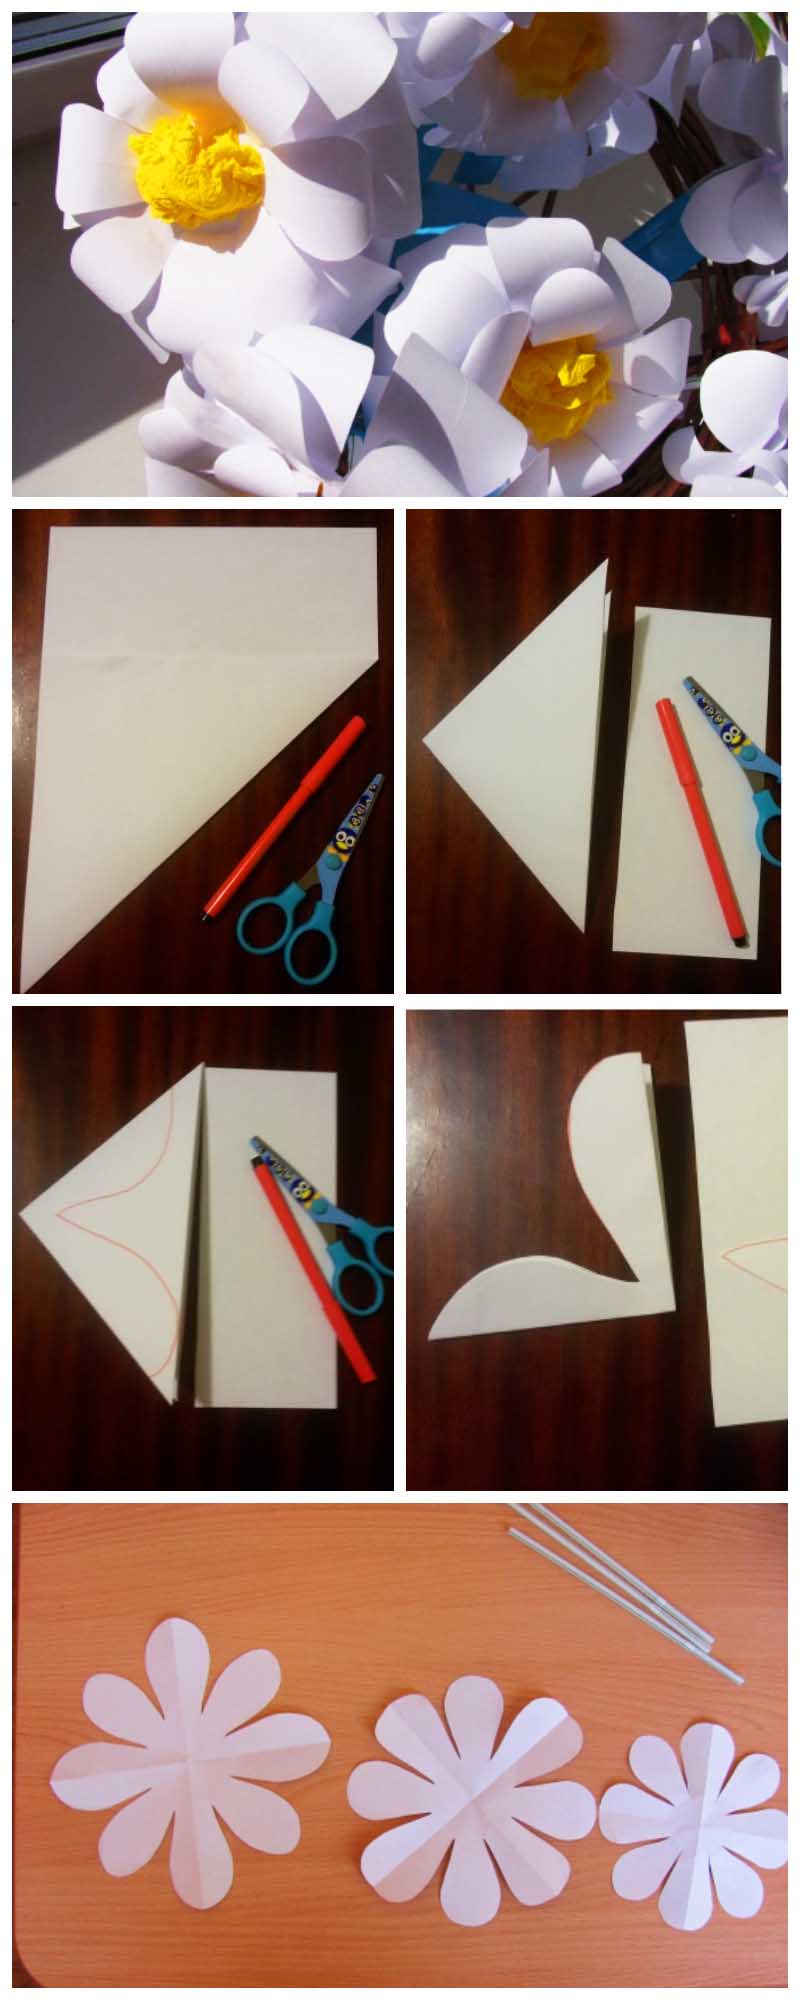 Ромашка из бумаги своими руками - шаблоны, трафареты и мастер-классы для детей